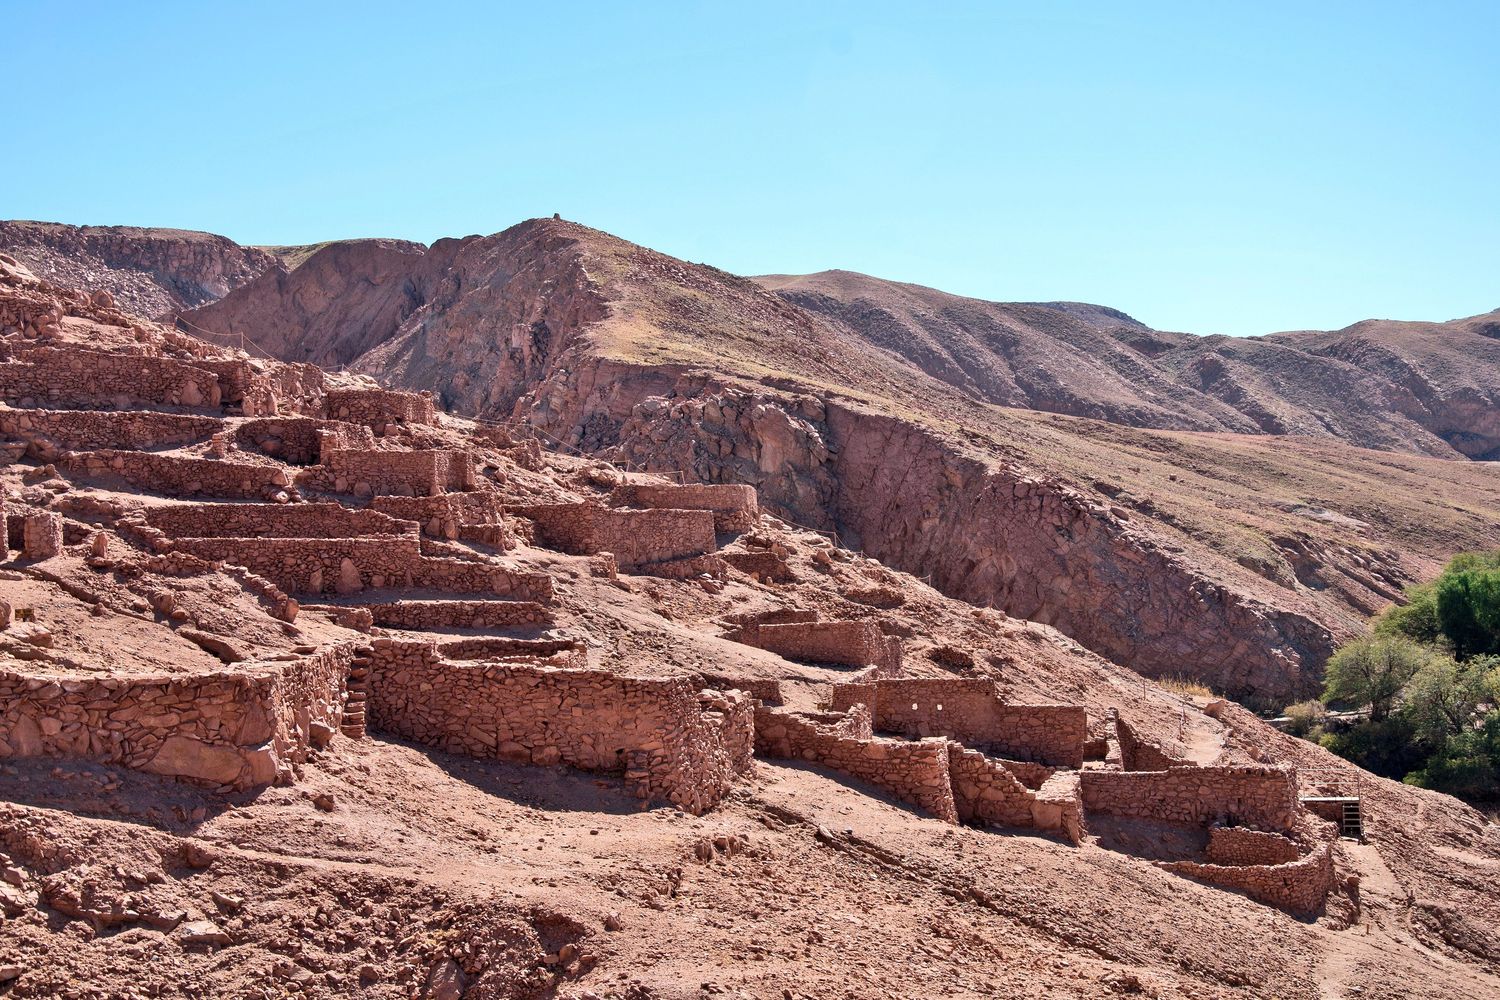 Pukara de Quitor near San Pedro de Atacama.